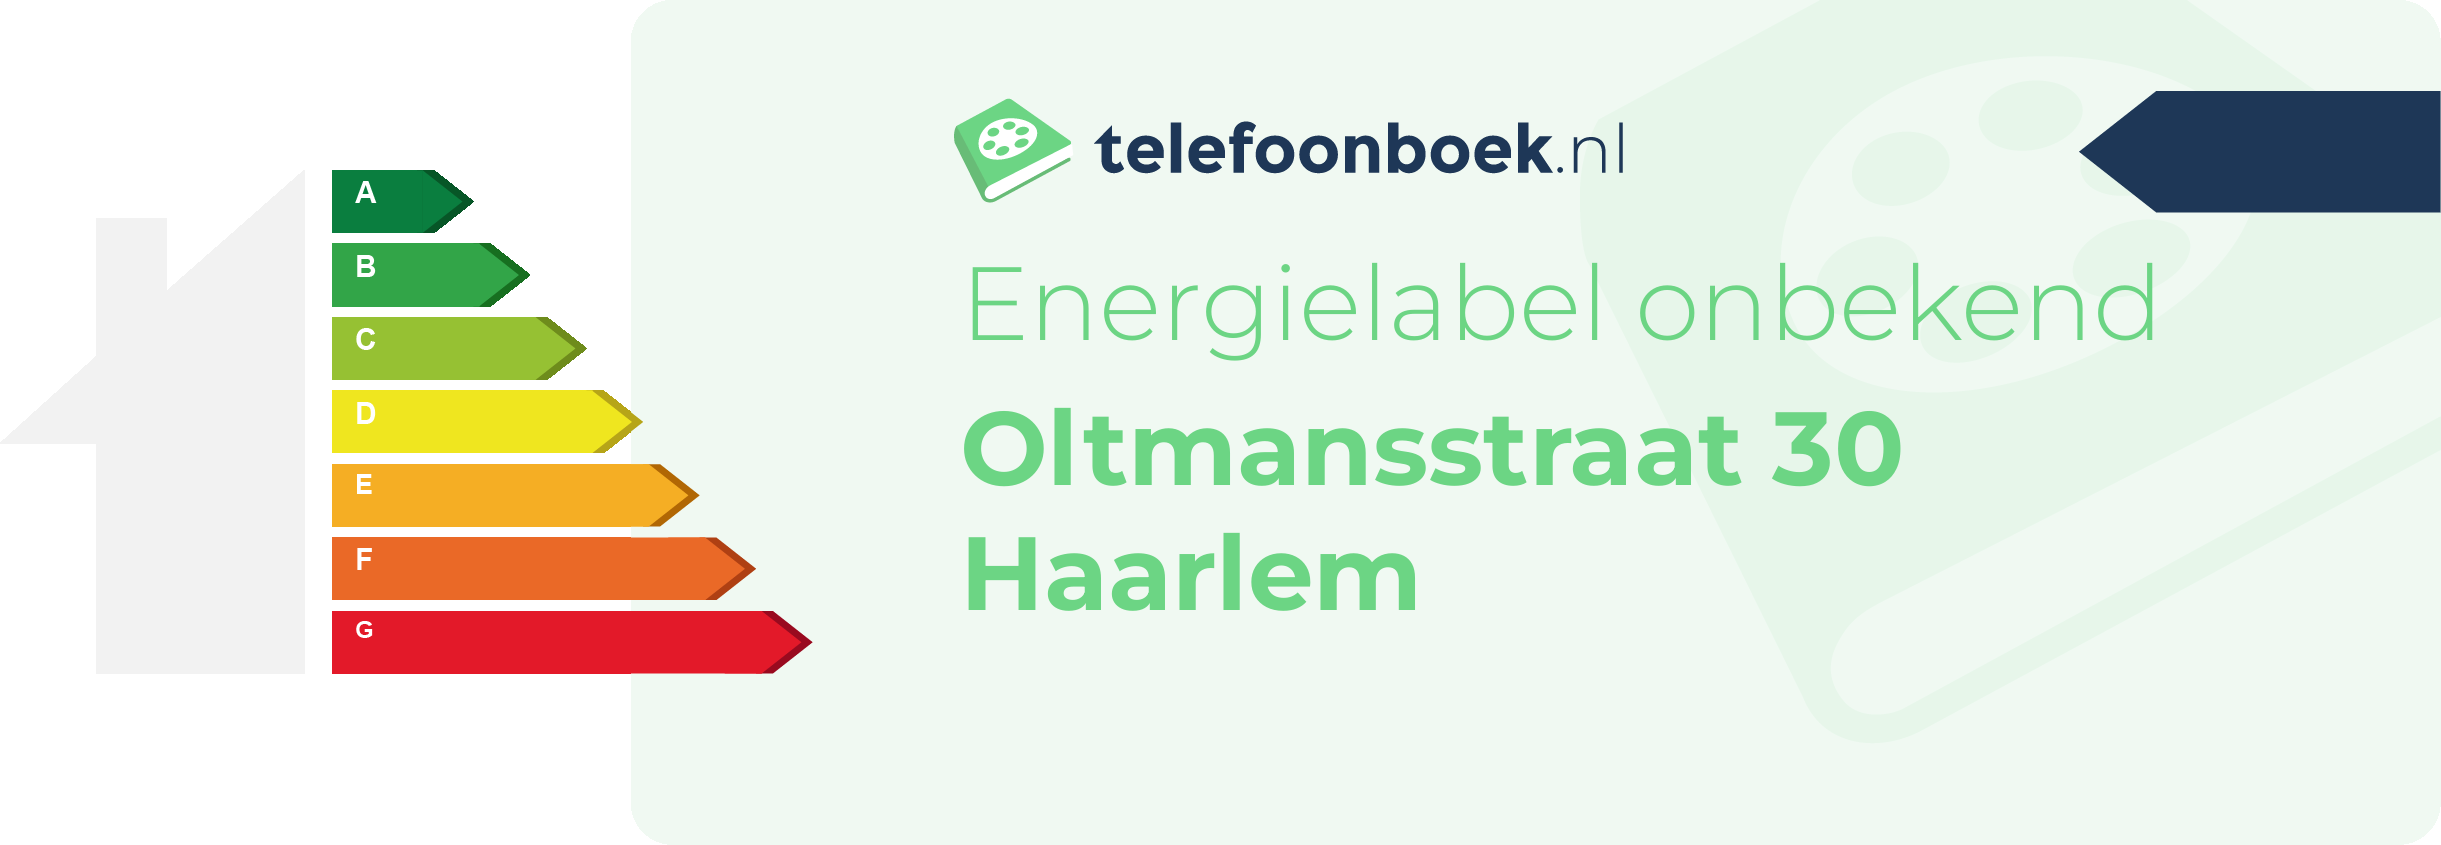 Energielabel Oltmansstraat 30 Haarlem